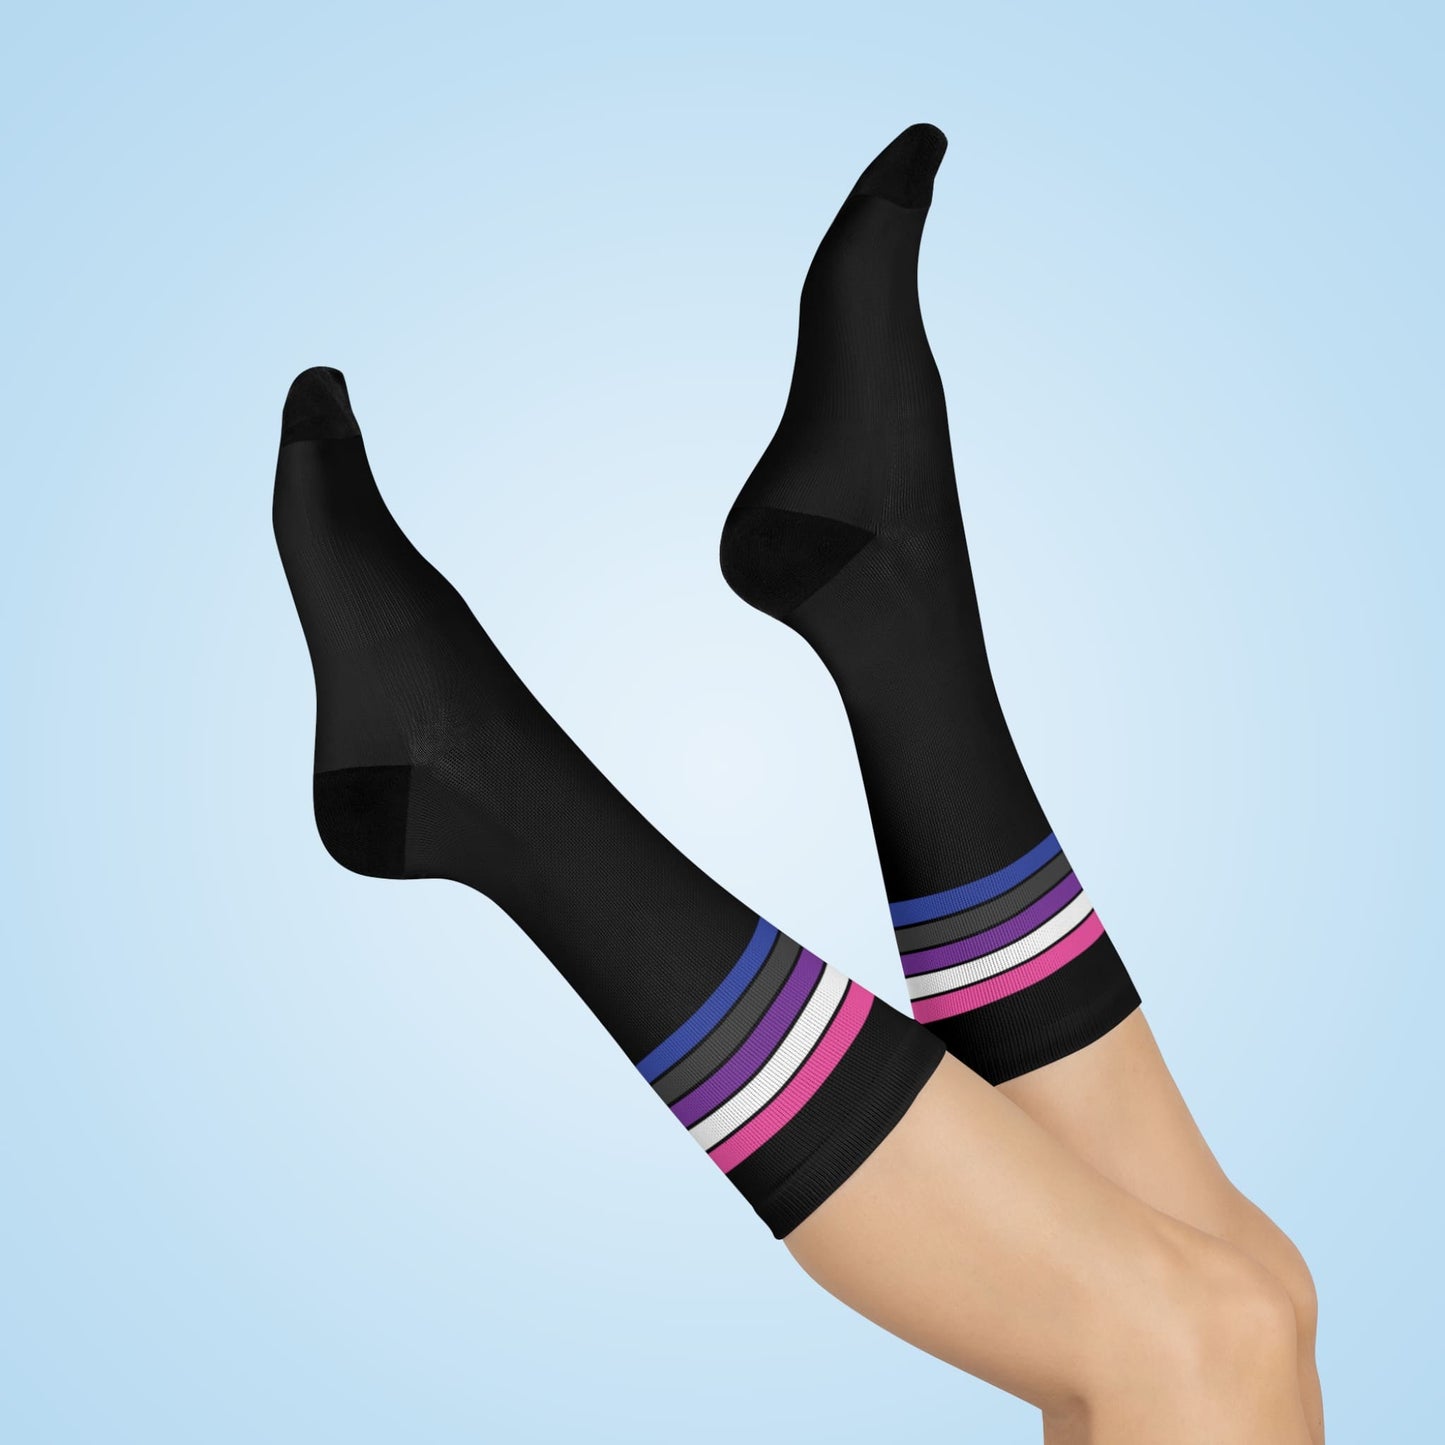 genderfluid socks, gender fluid pride flag, air